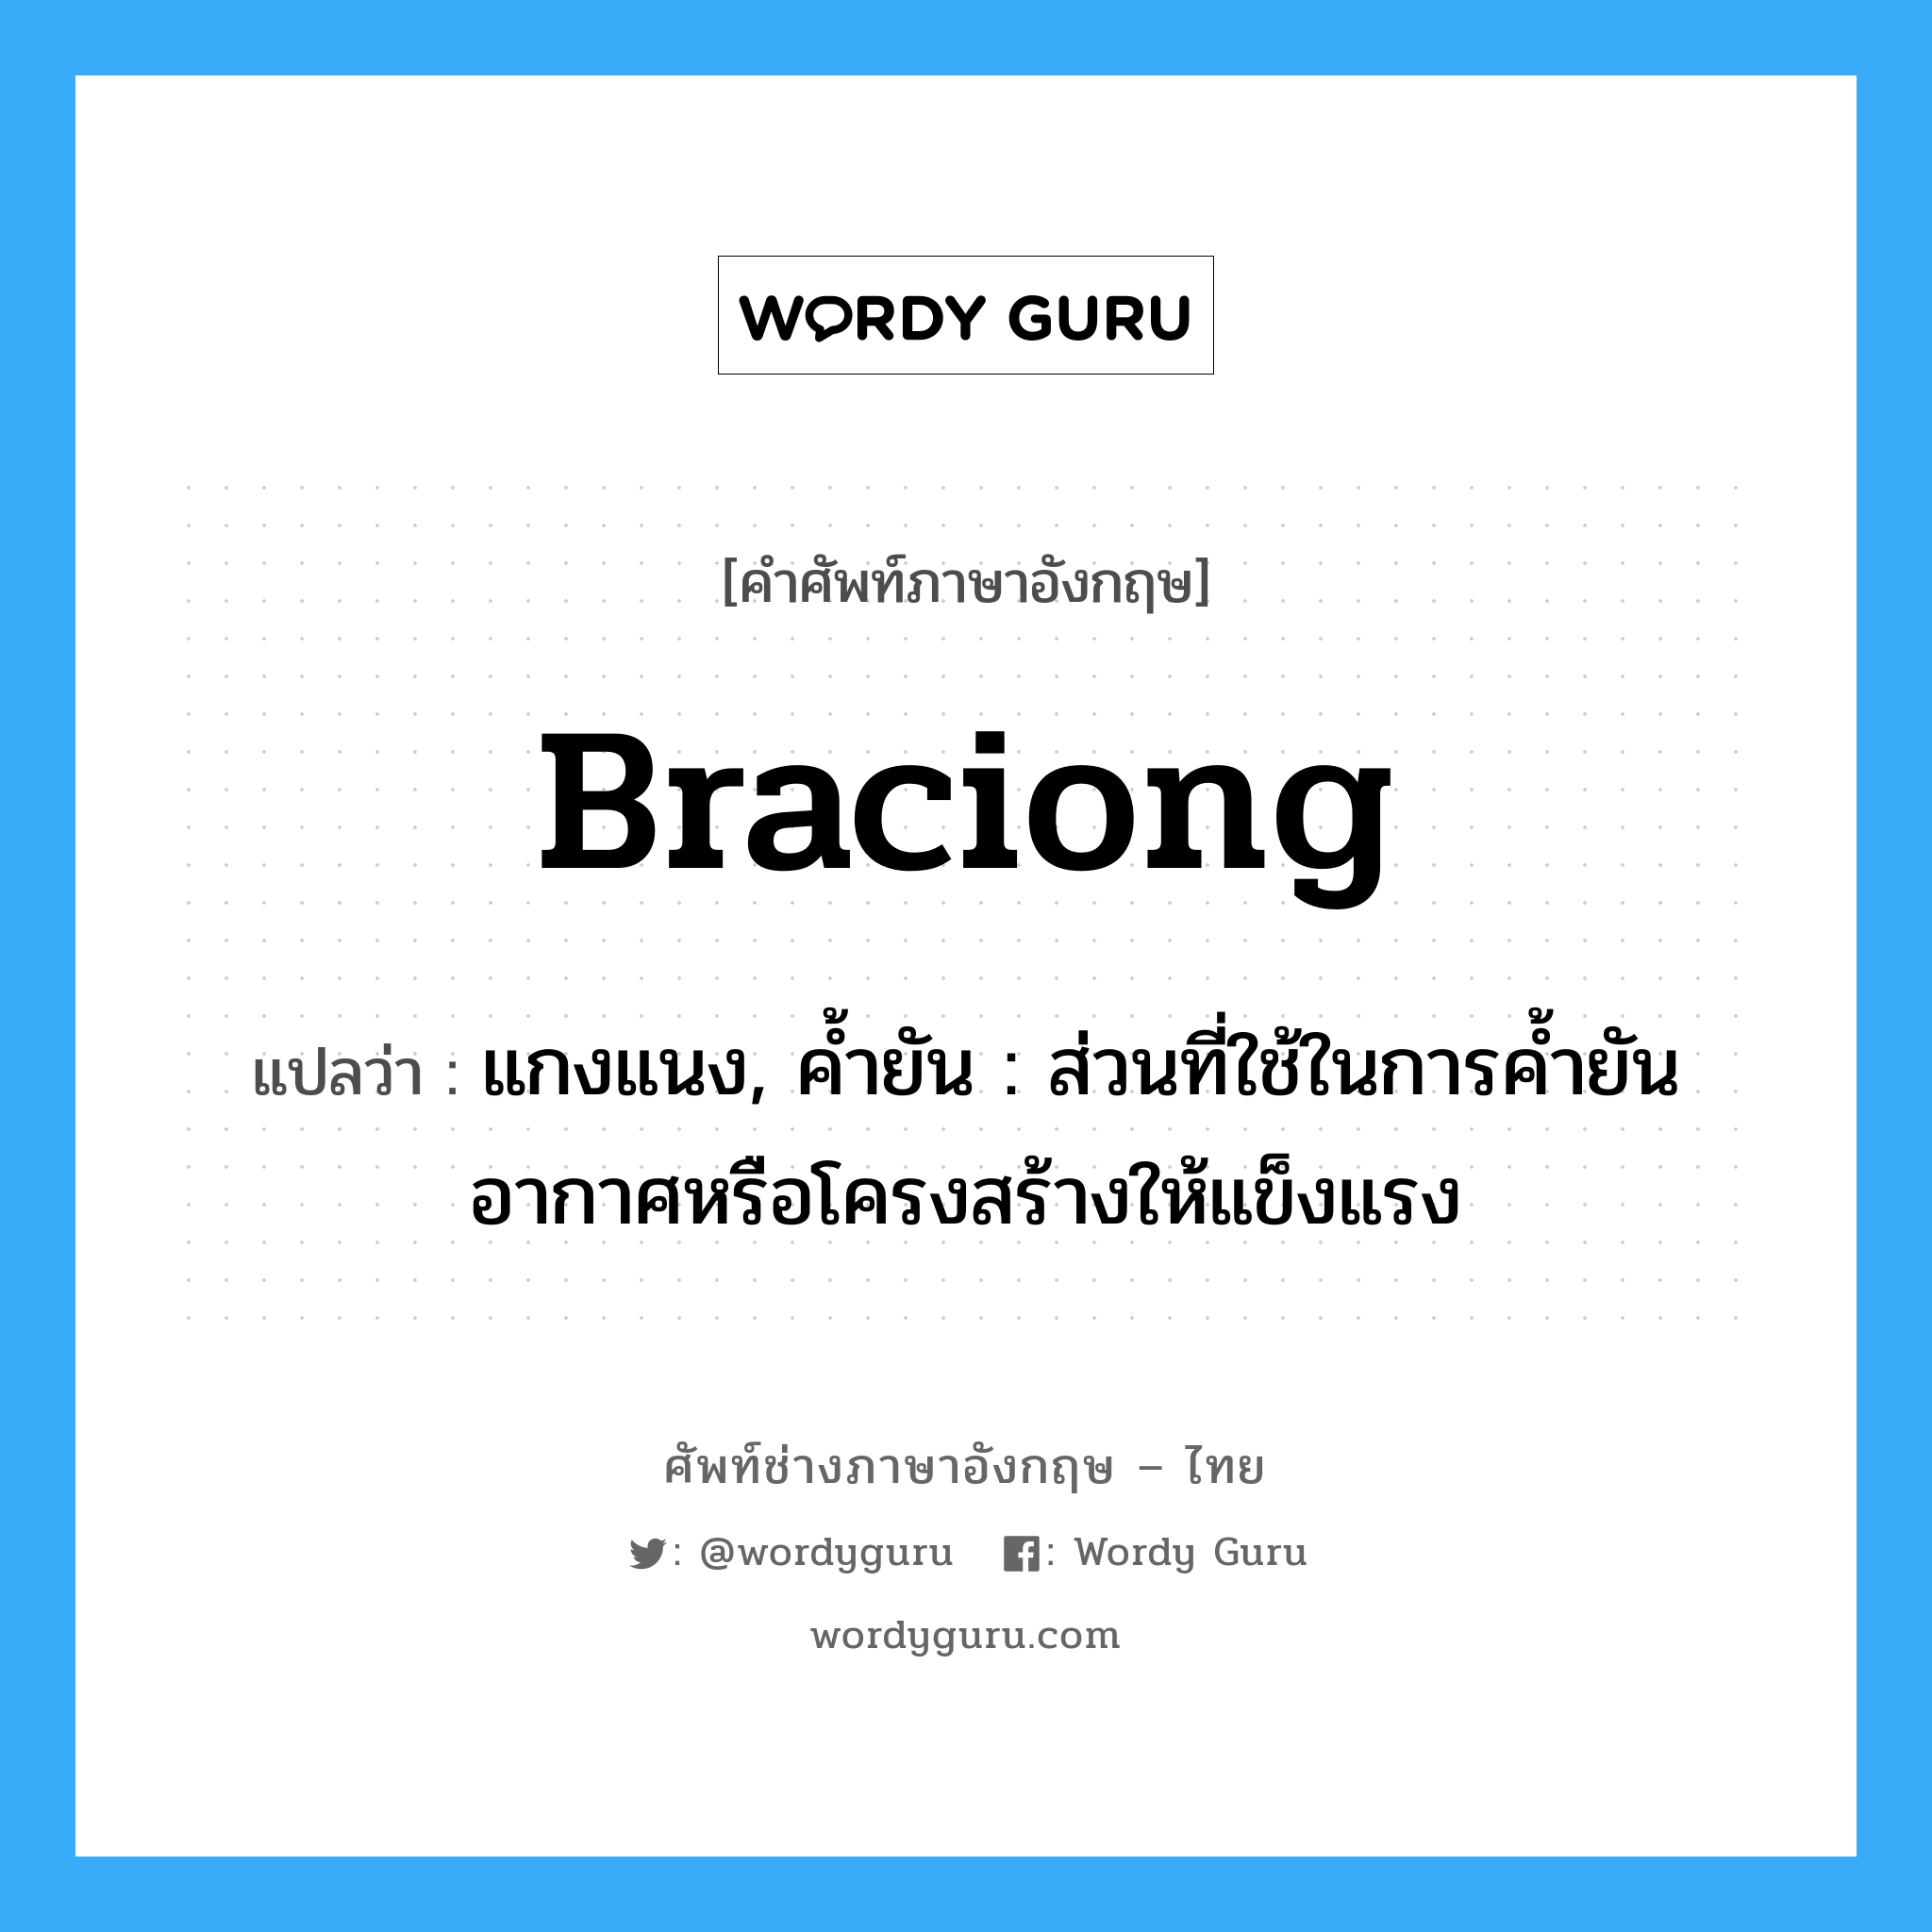 braciong แปลว่า?, คำศัพท์ช่างภาษาอังกฤษ - ไทย braciong คำศัพท์ภาษาอังกฤษ braciong แปลว่า แกงแนง, ค้ำยัน : ส่วนที่ใช้ในการค้ำยันอากาศหรือโครงสร้างให้แข็งแรง